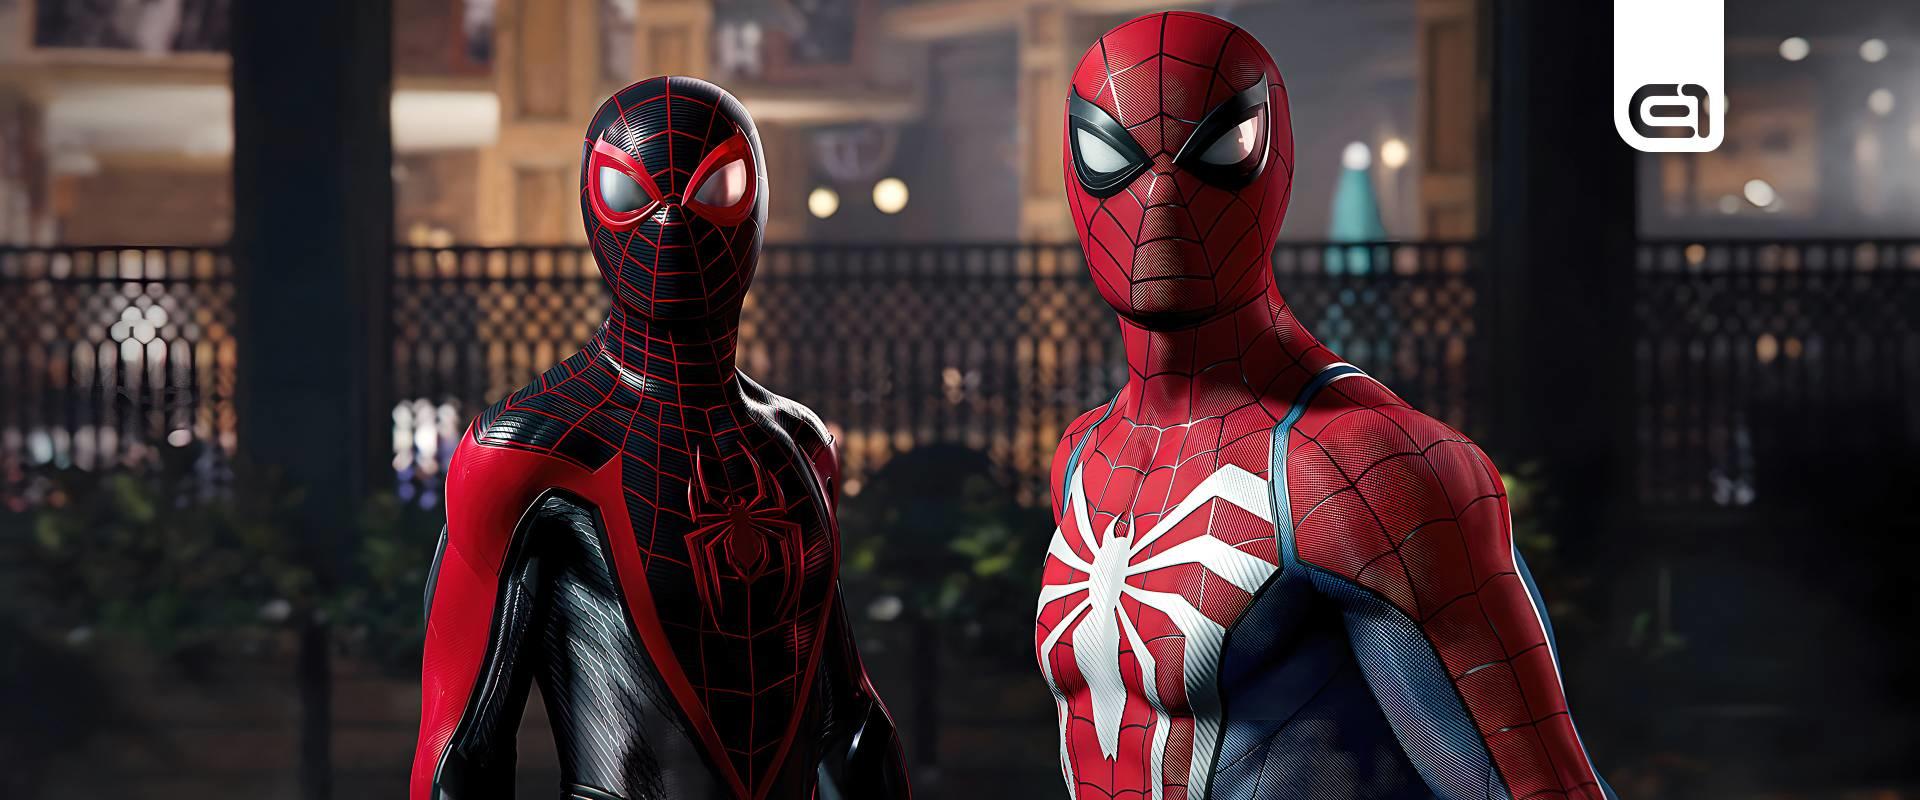 10 dolog, amit érdemes tudnod a Marvel's Spider-Man 2-ről, mielőtt megvennéd